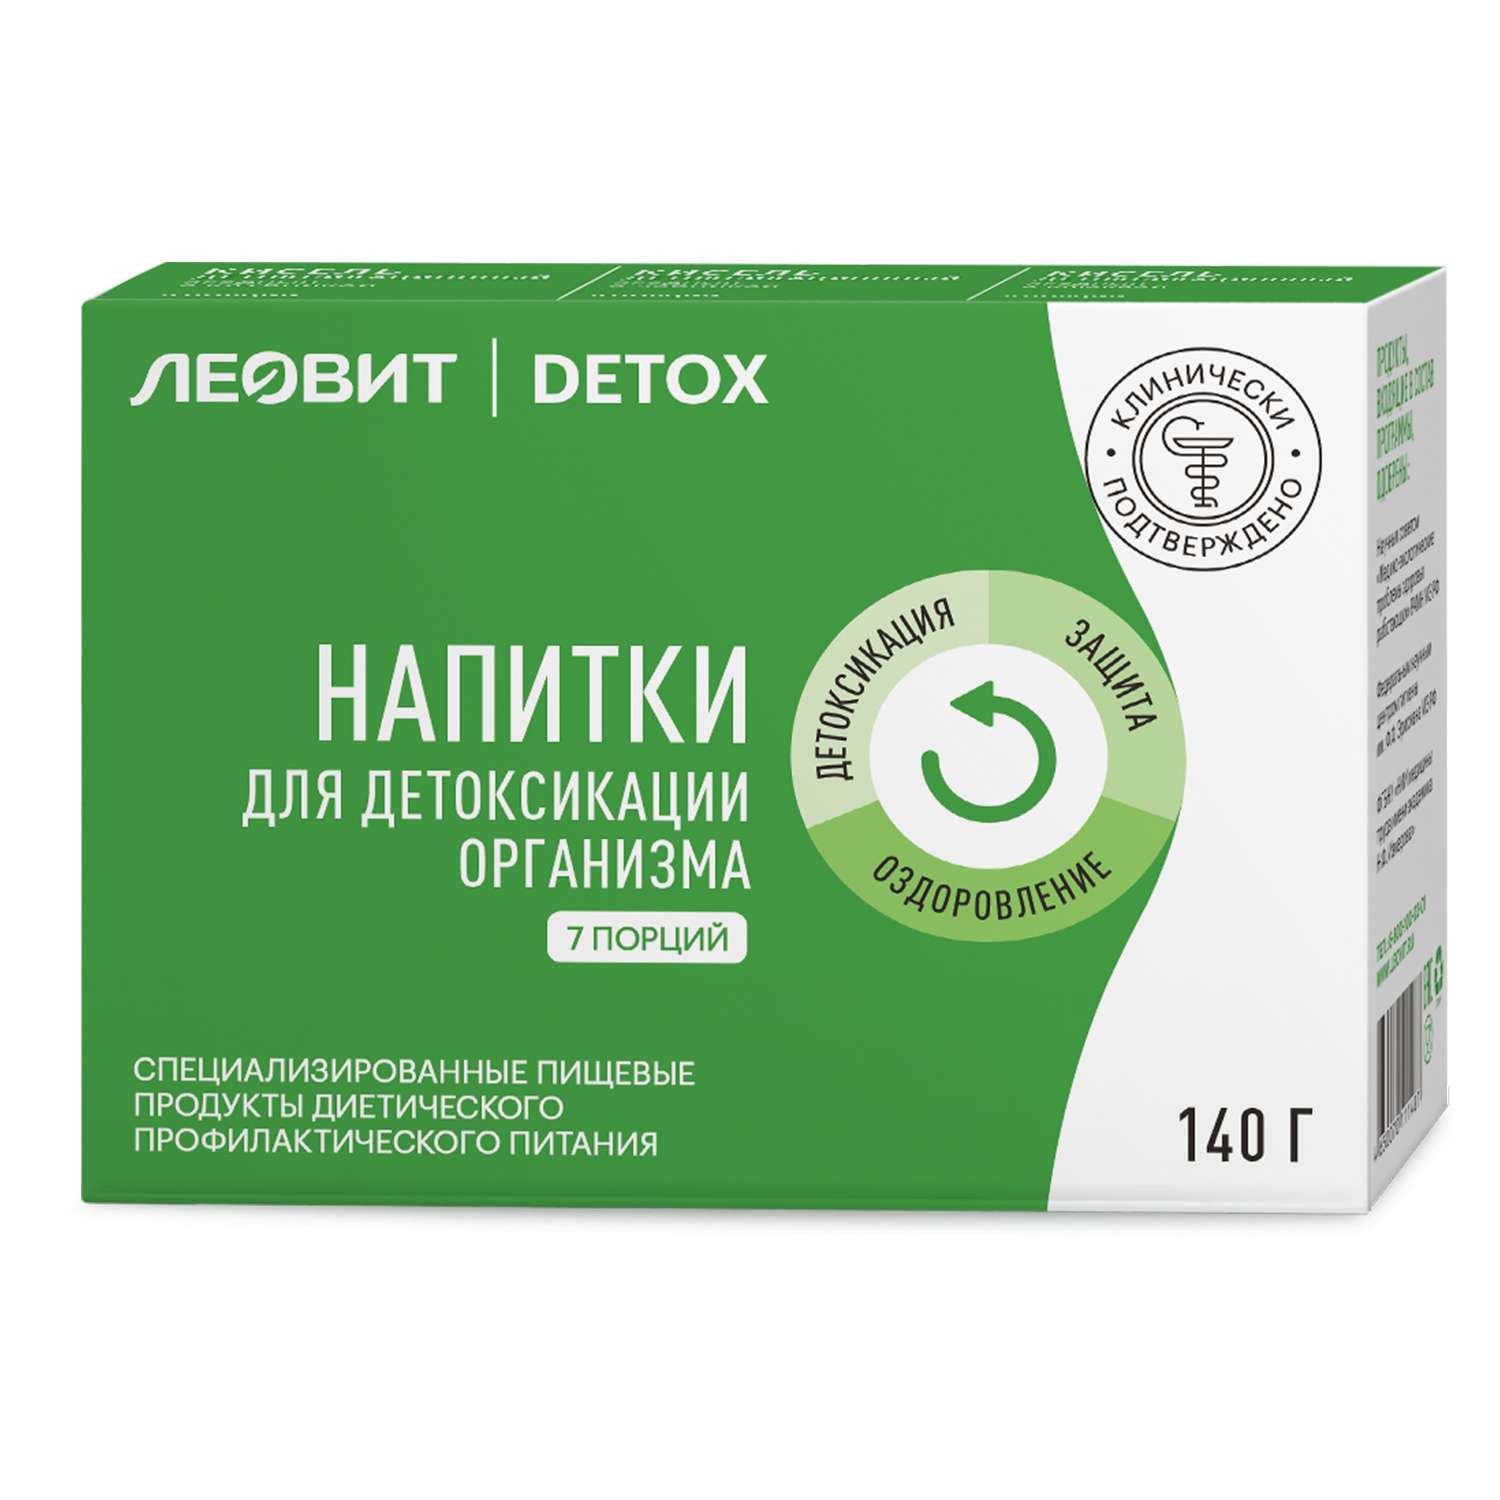 Кисели Леовит Detox специализированные напитки для детоксикации организма 140г 7пак - фото 1